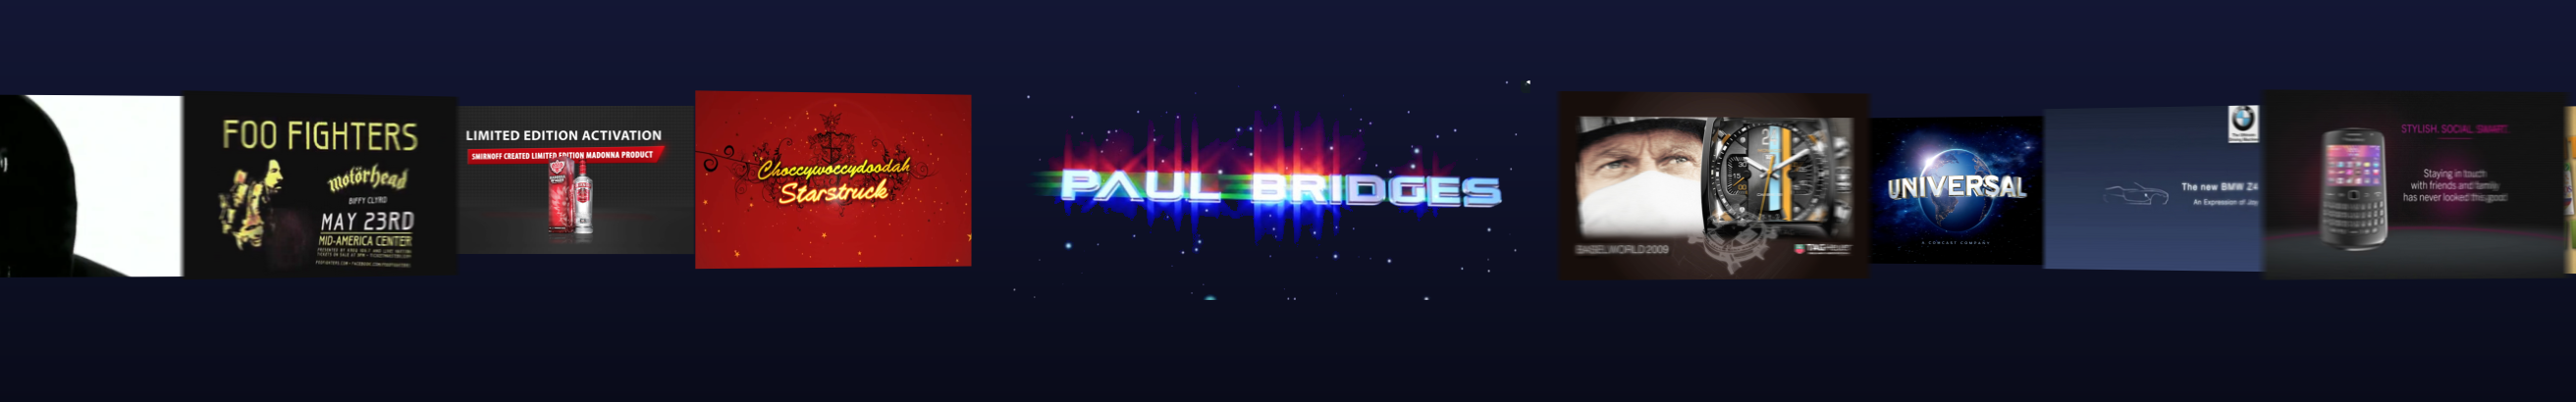 Paul Bridges's profile banner